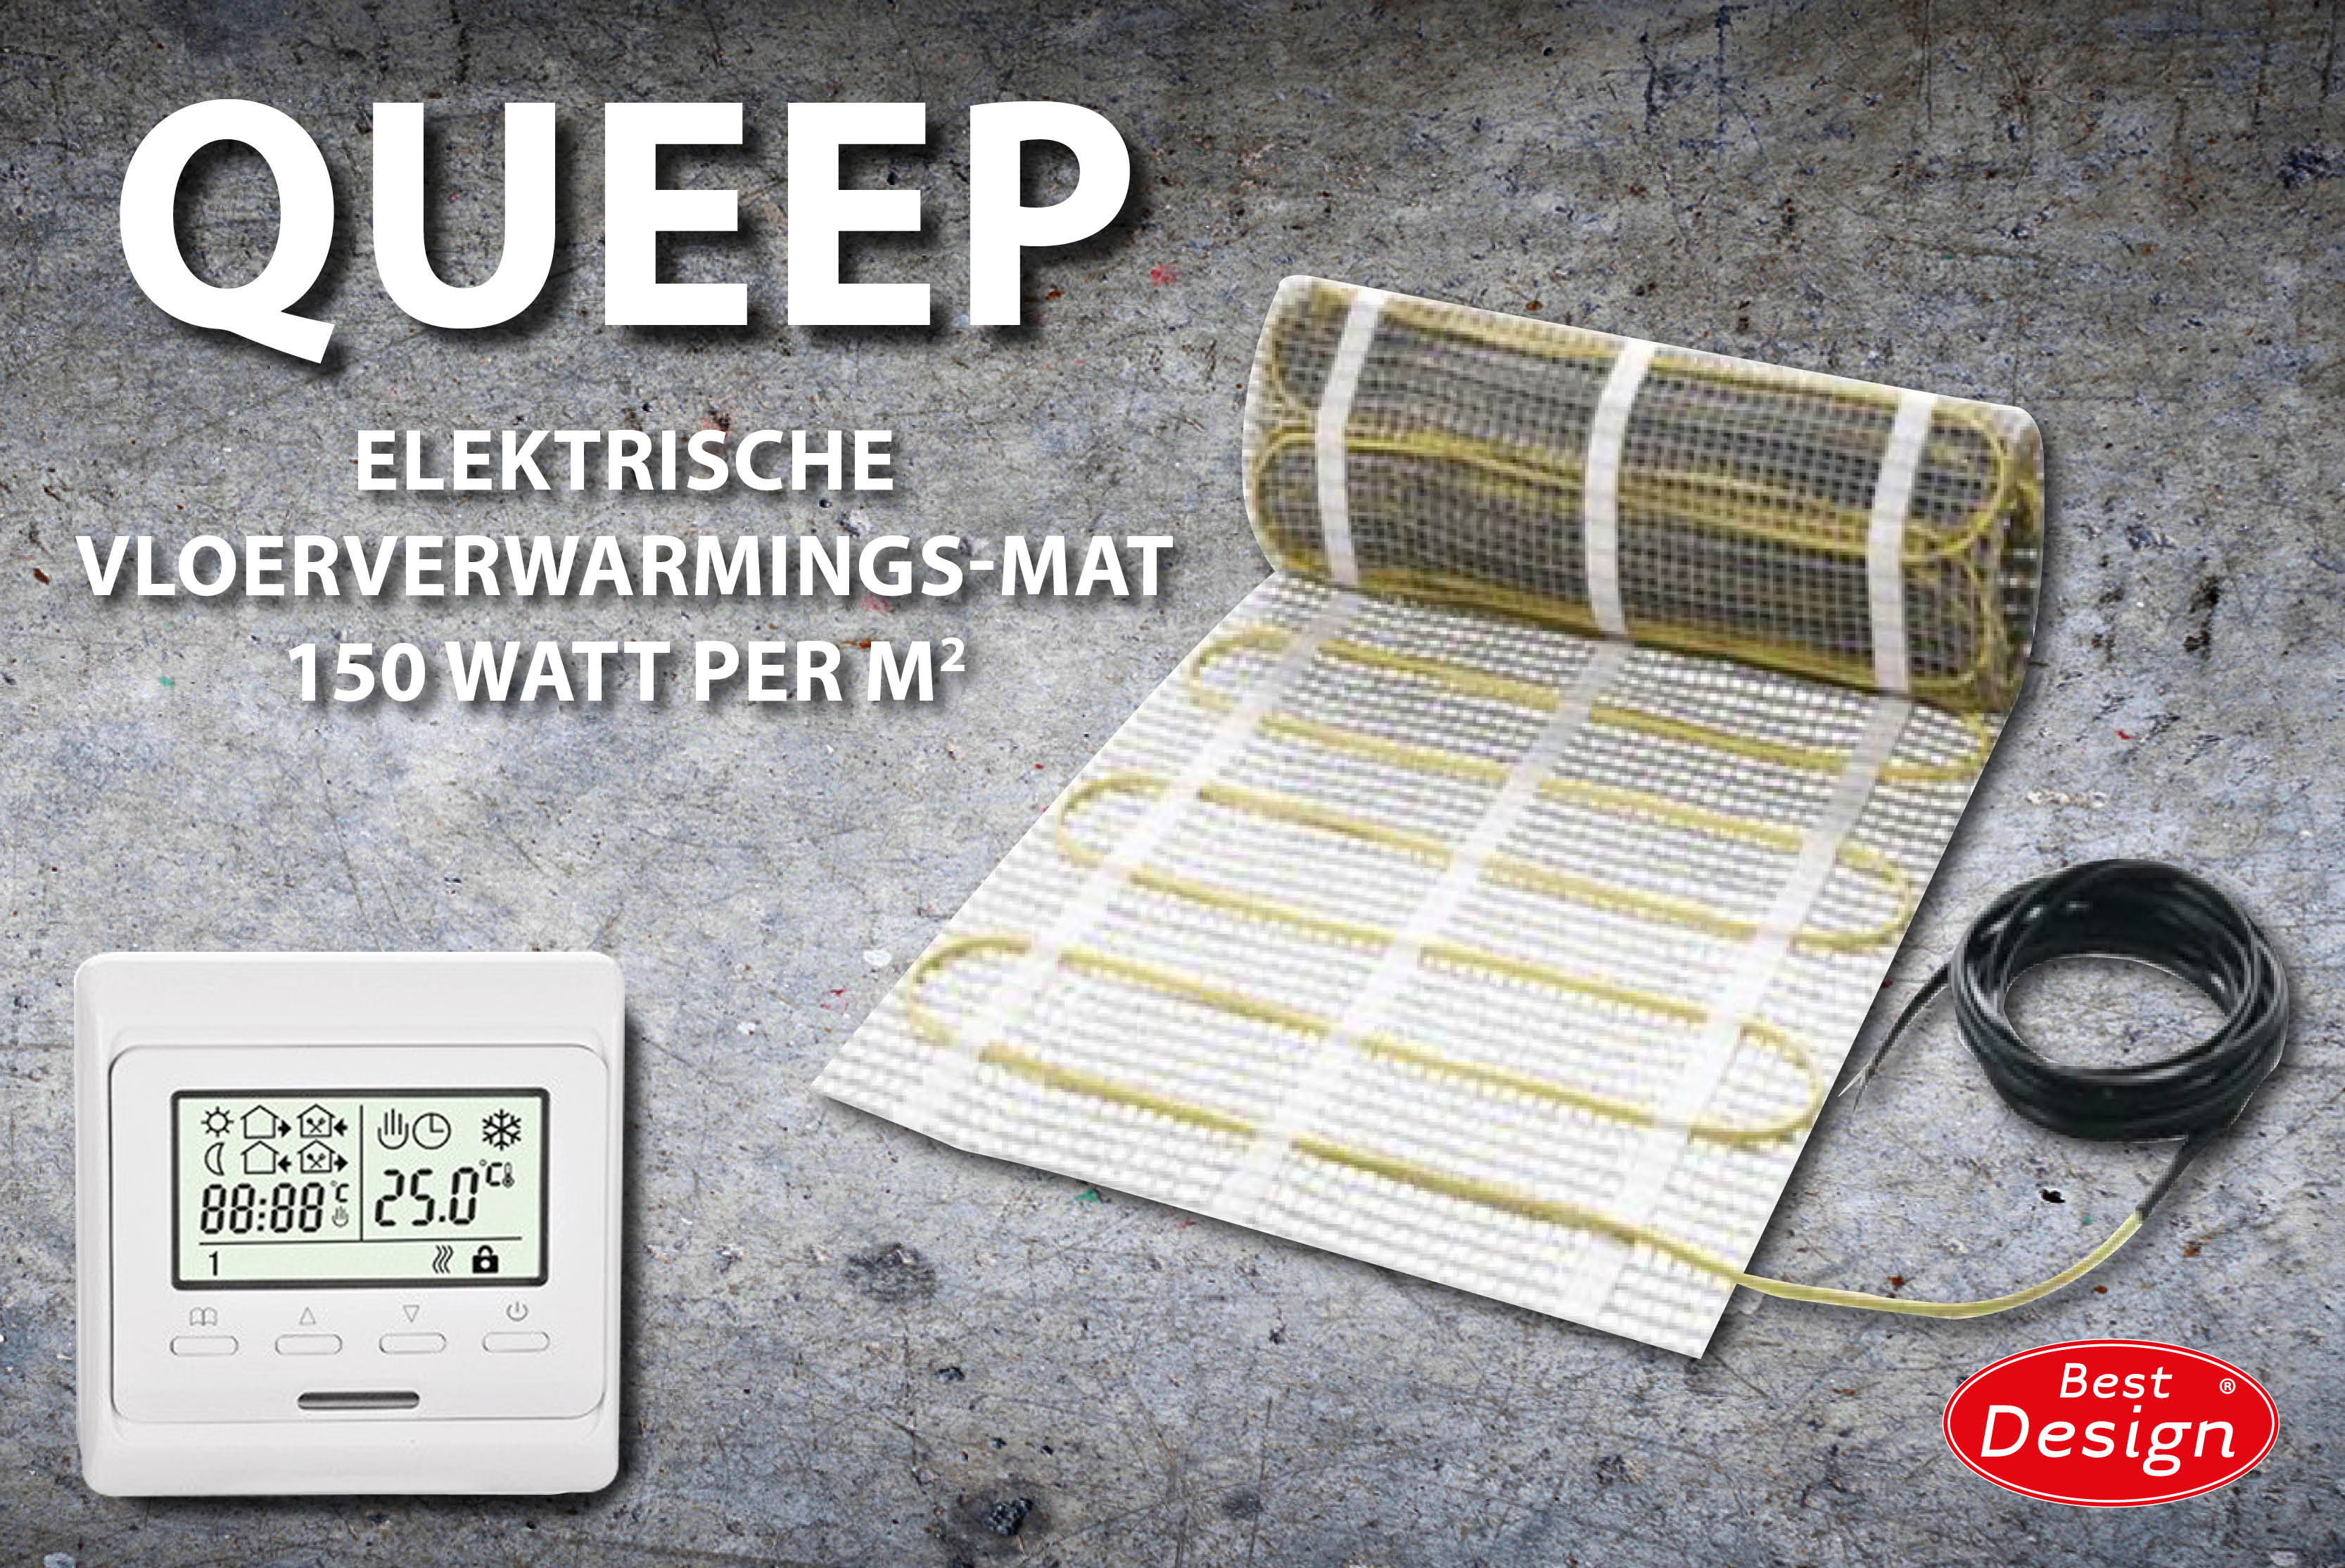 Best-Design Queep elektrische vloerverwarmings-mat 12.0 m2 Top Merken Winkel